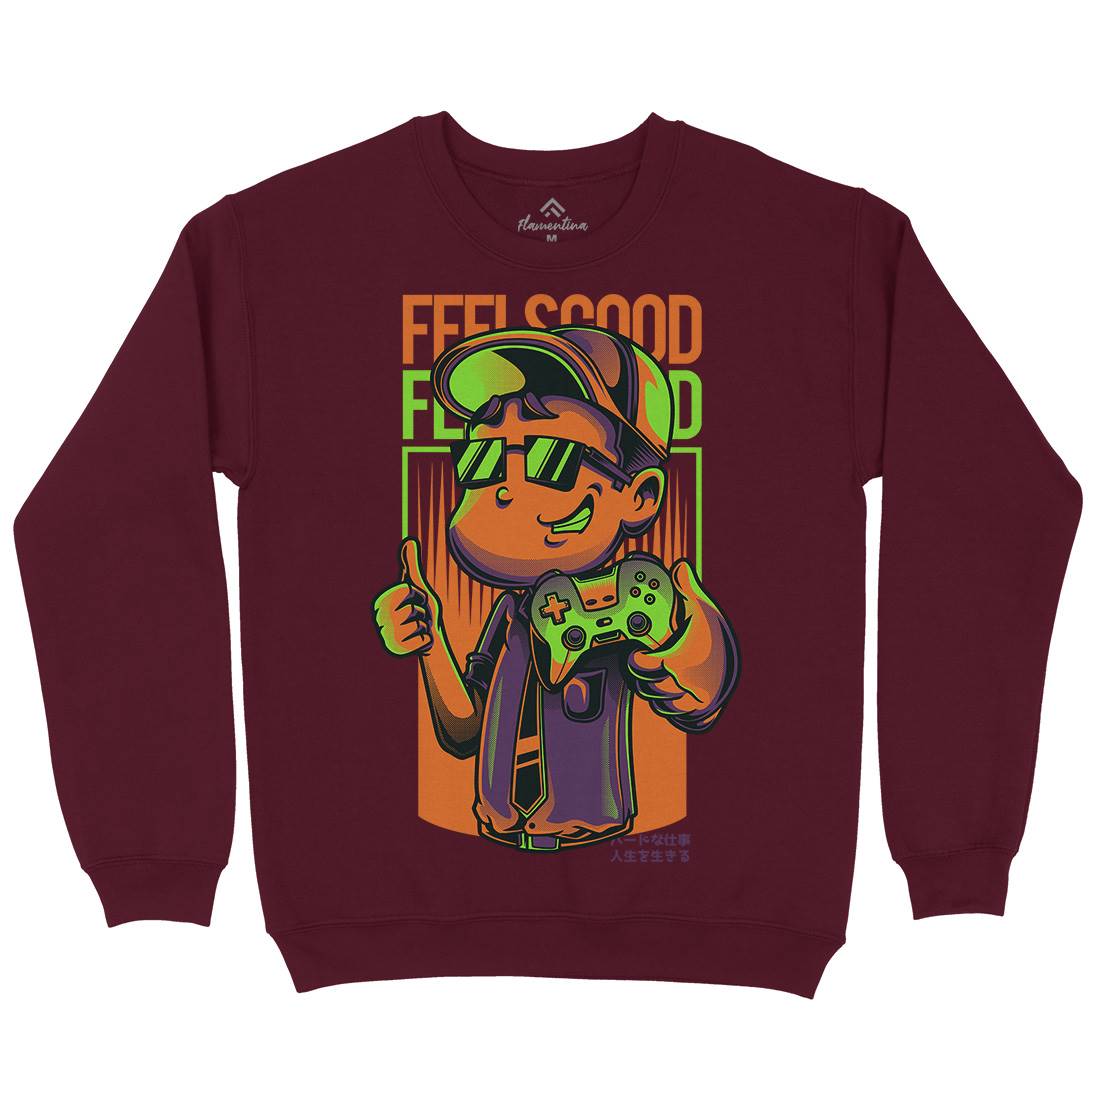 Feels Good Kids Crew Neck Sweatshirt Geek D773